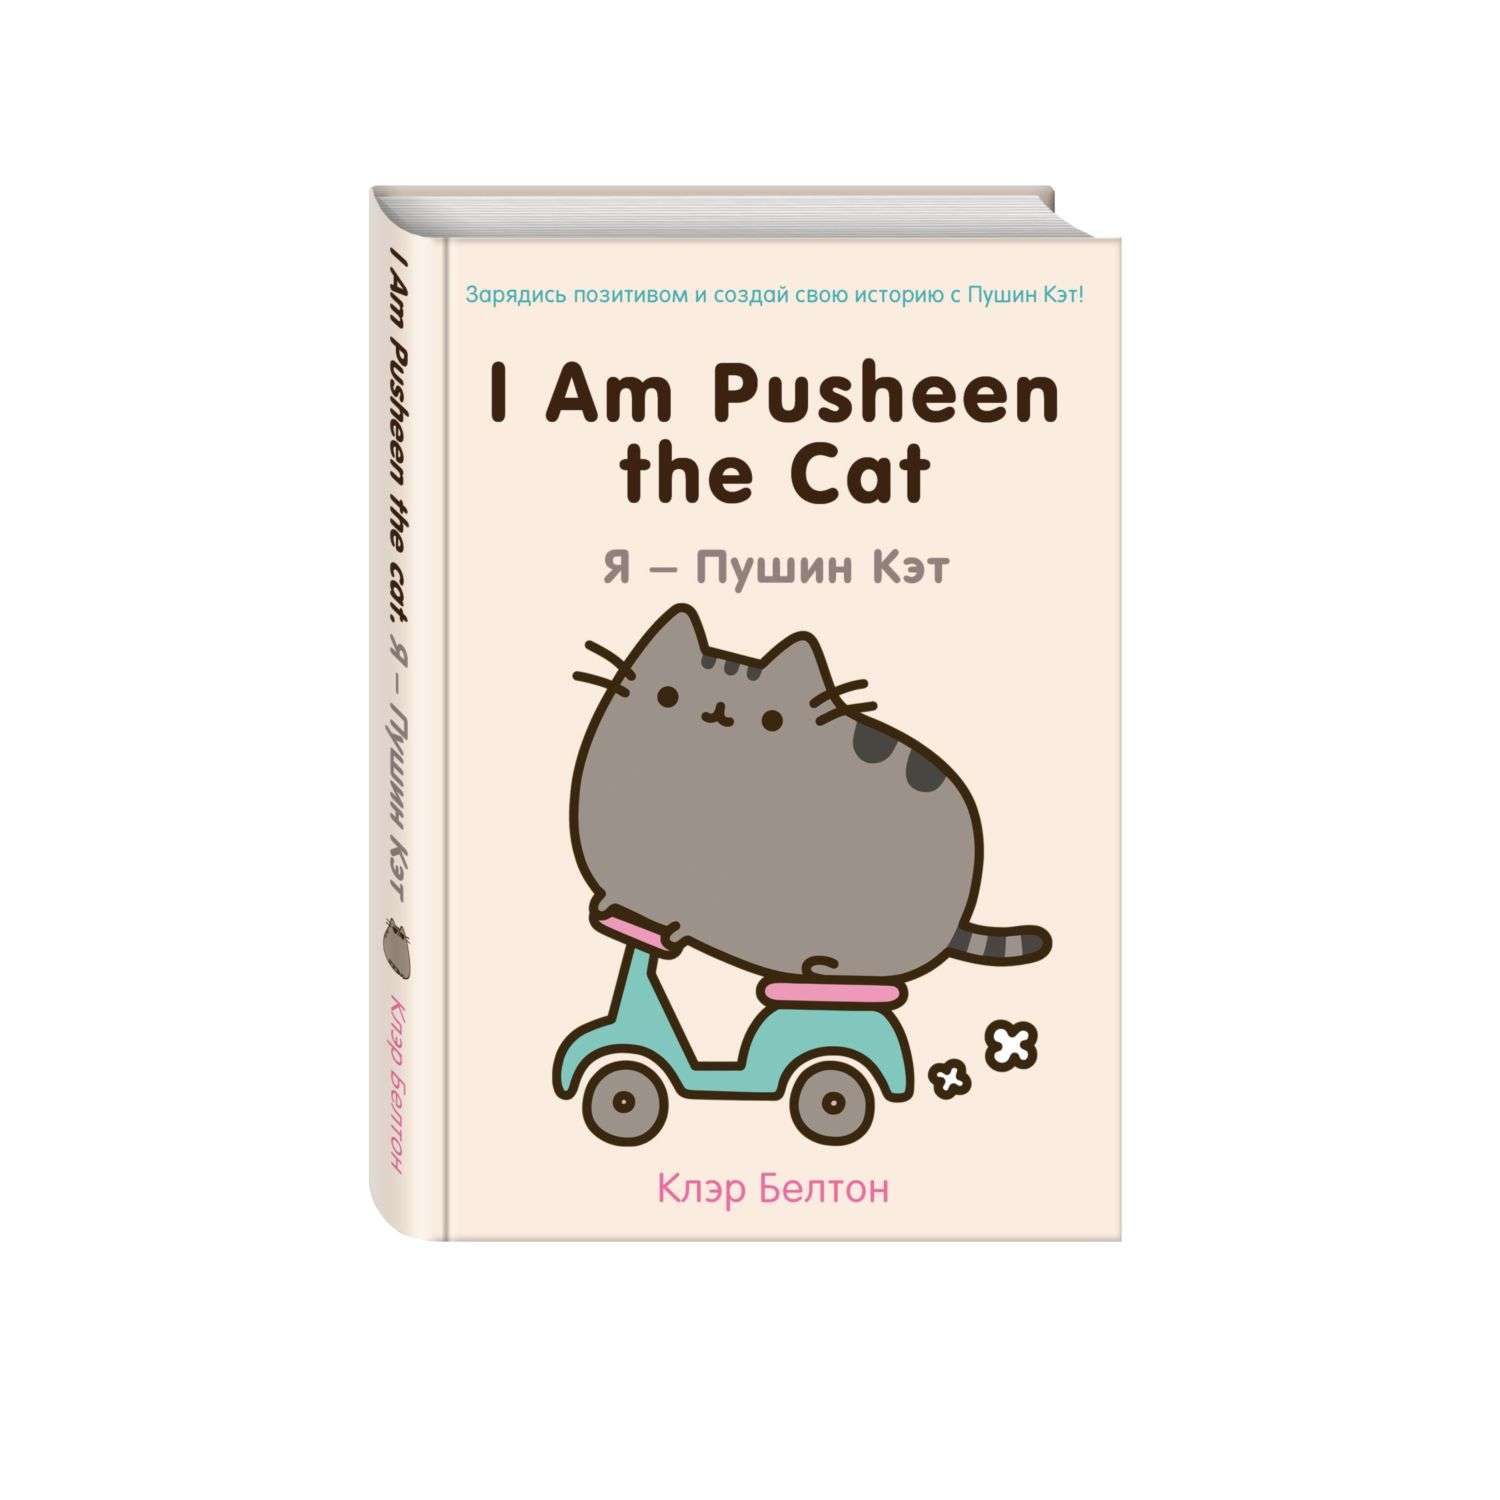 Книга Эксмо I Am Pusheen the Cat Я Пушин Кэт - фото 1